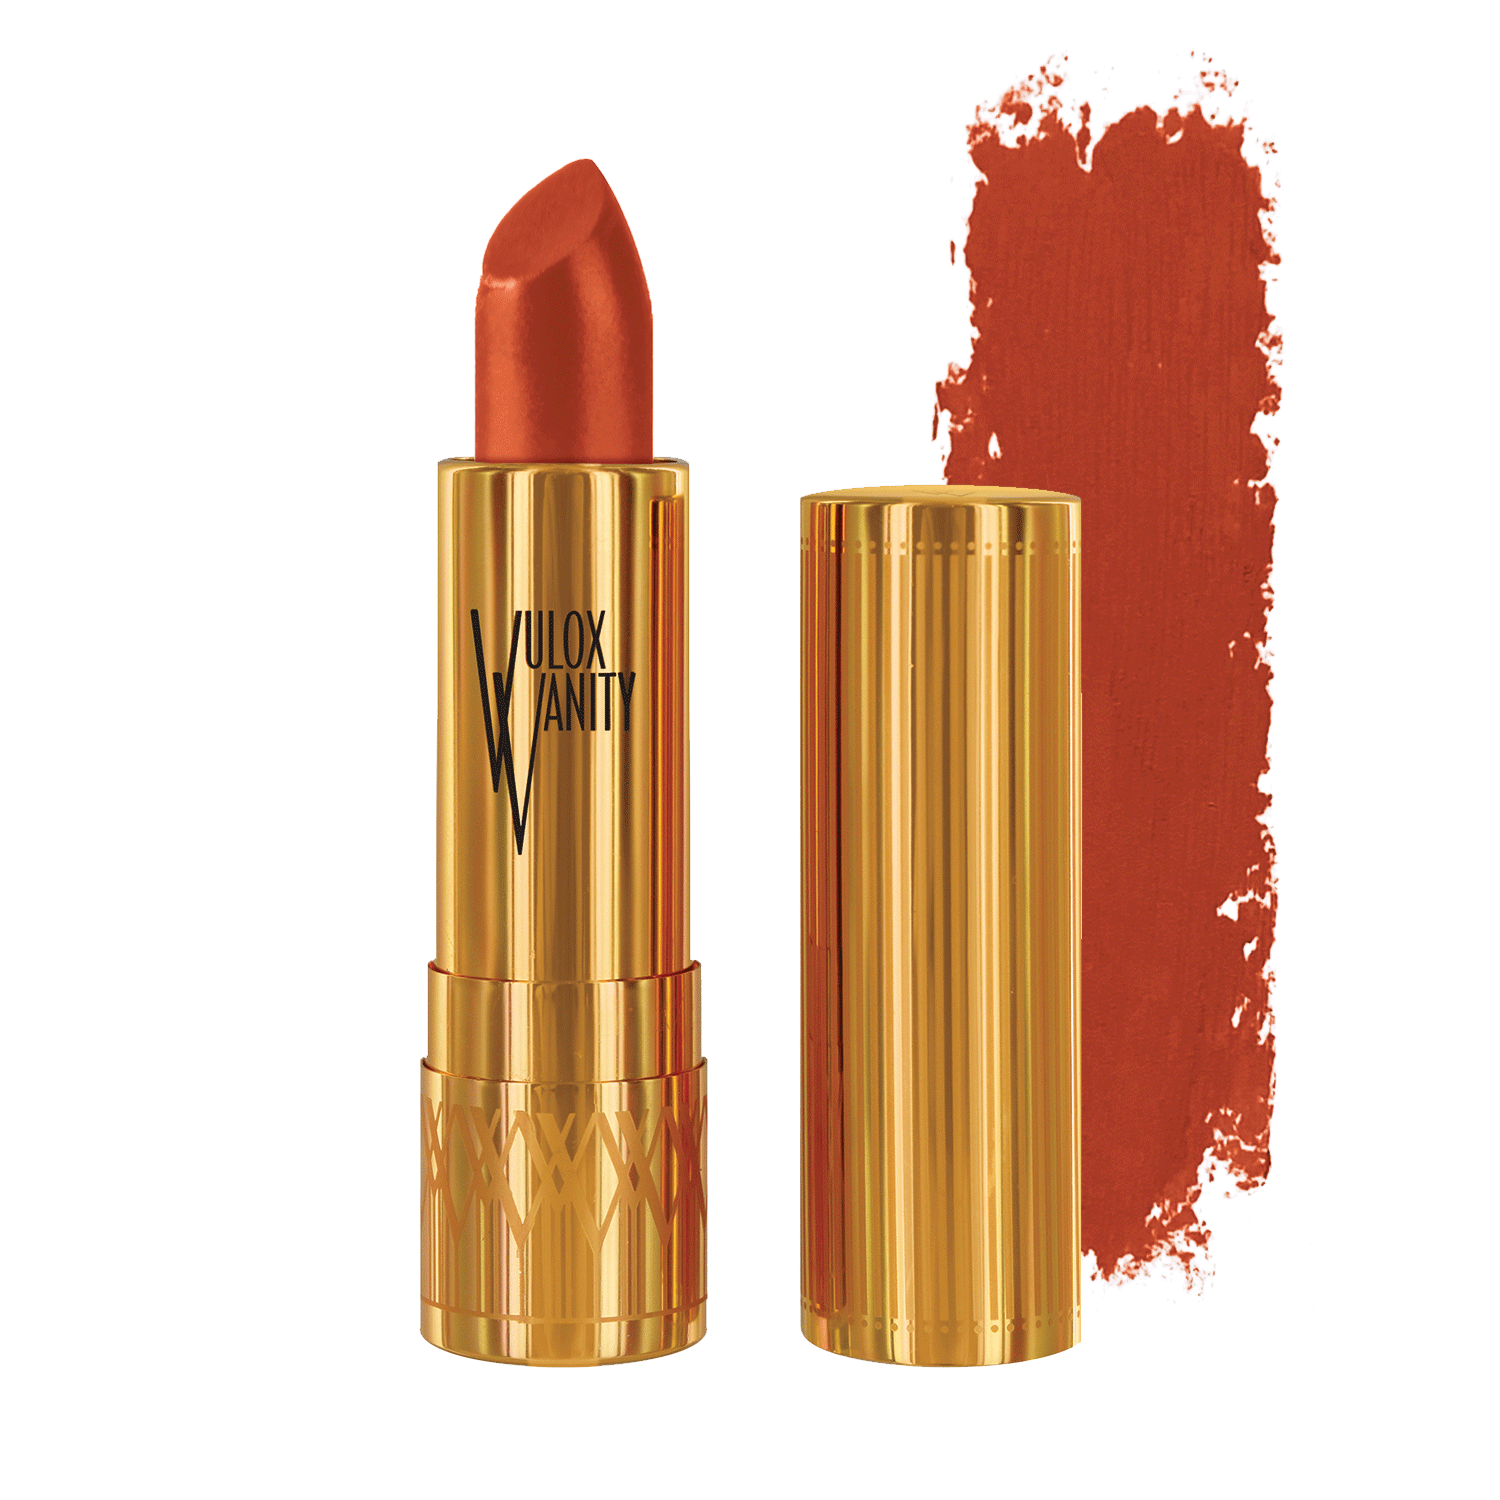 Vulox Vanity Glamour Lipstick in Poppy